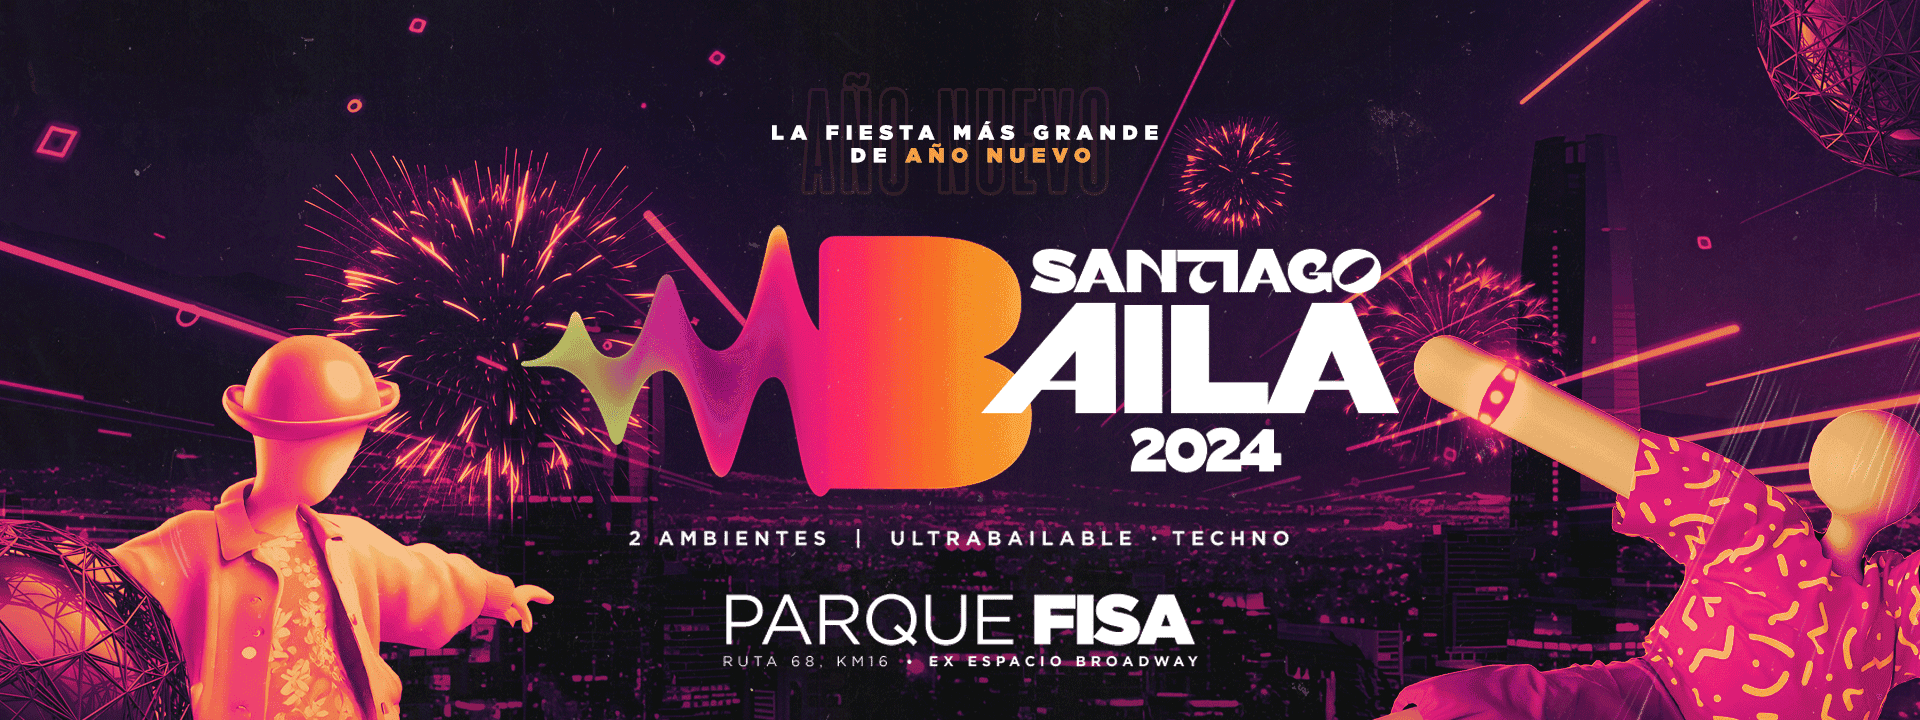 Santiago Baila en Parque Fisa 2024